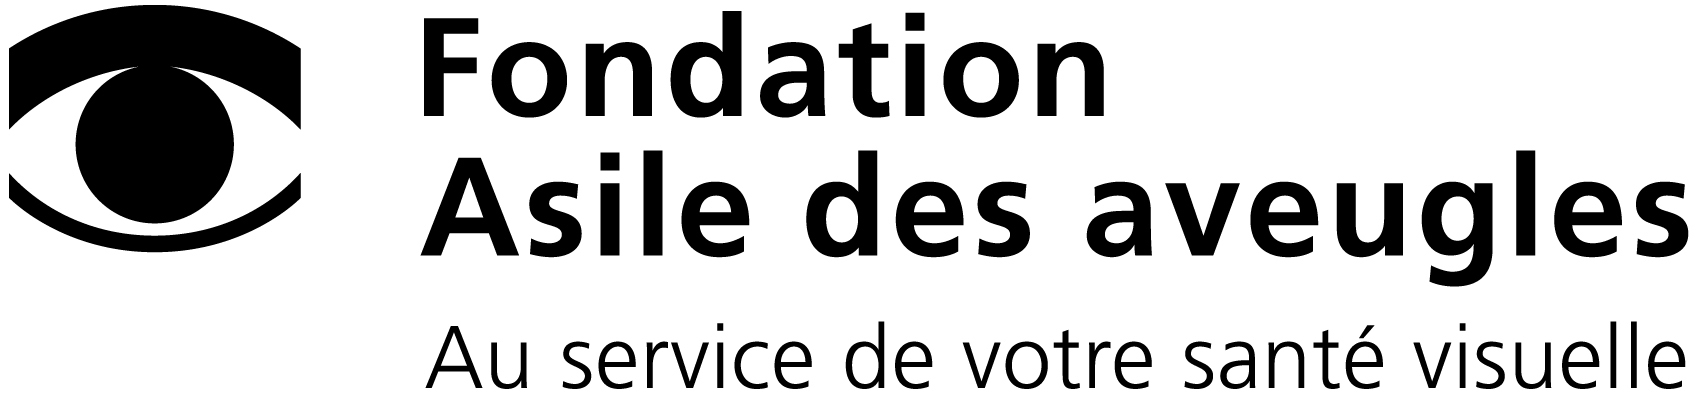 logo fondation Asile des aveugles